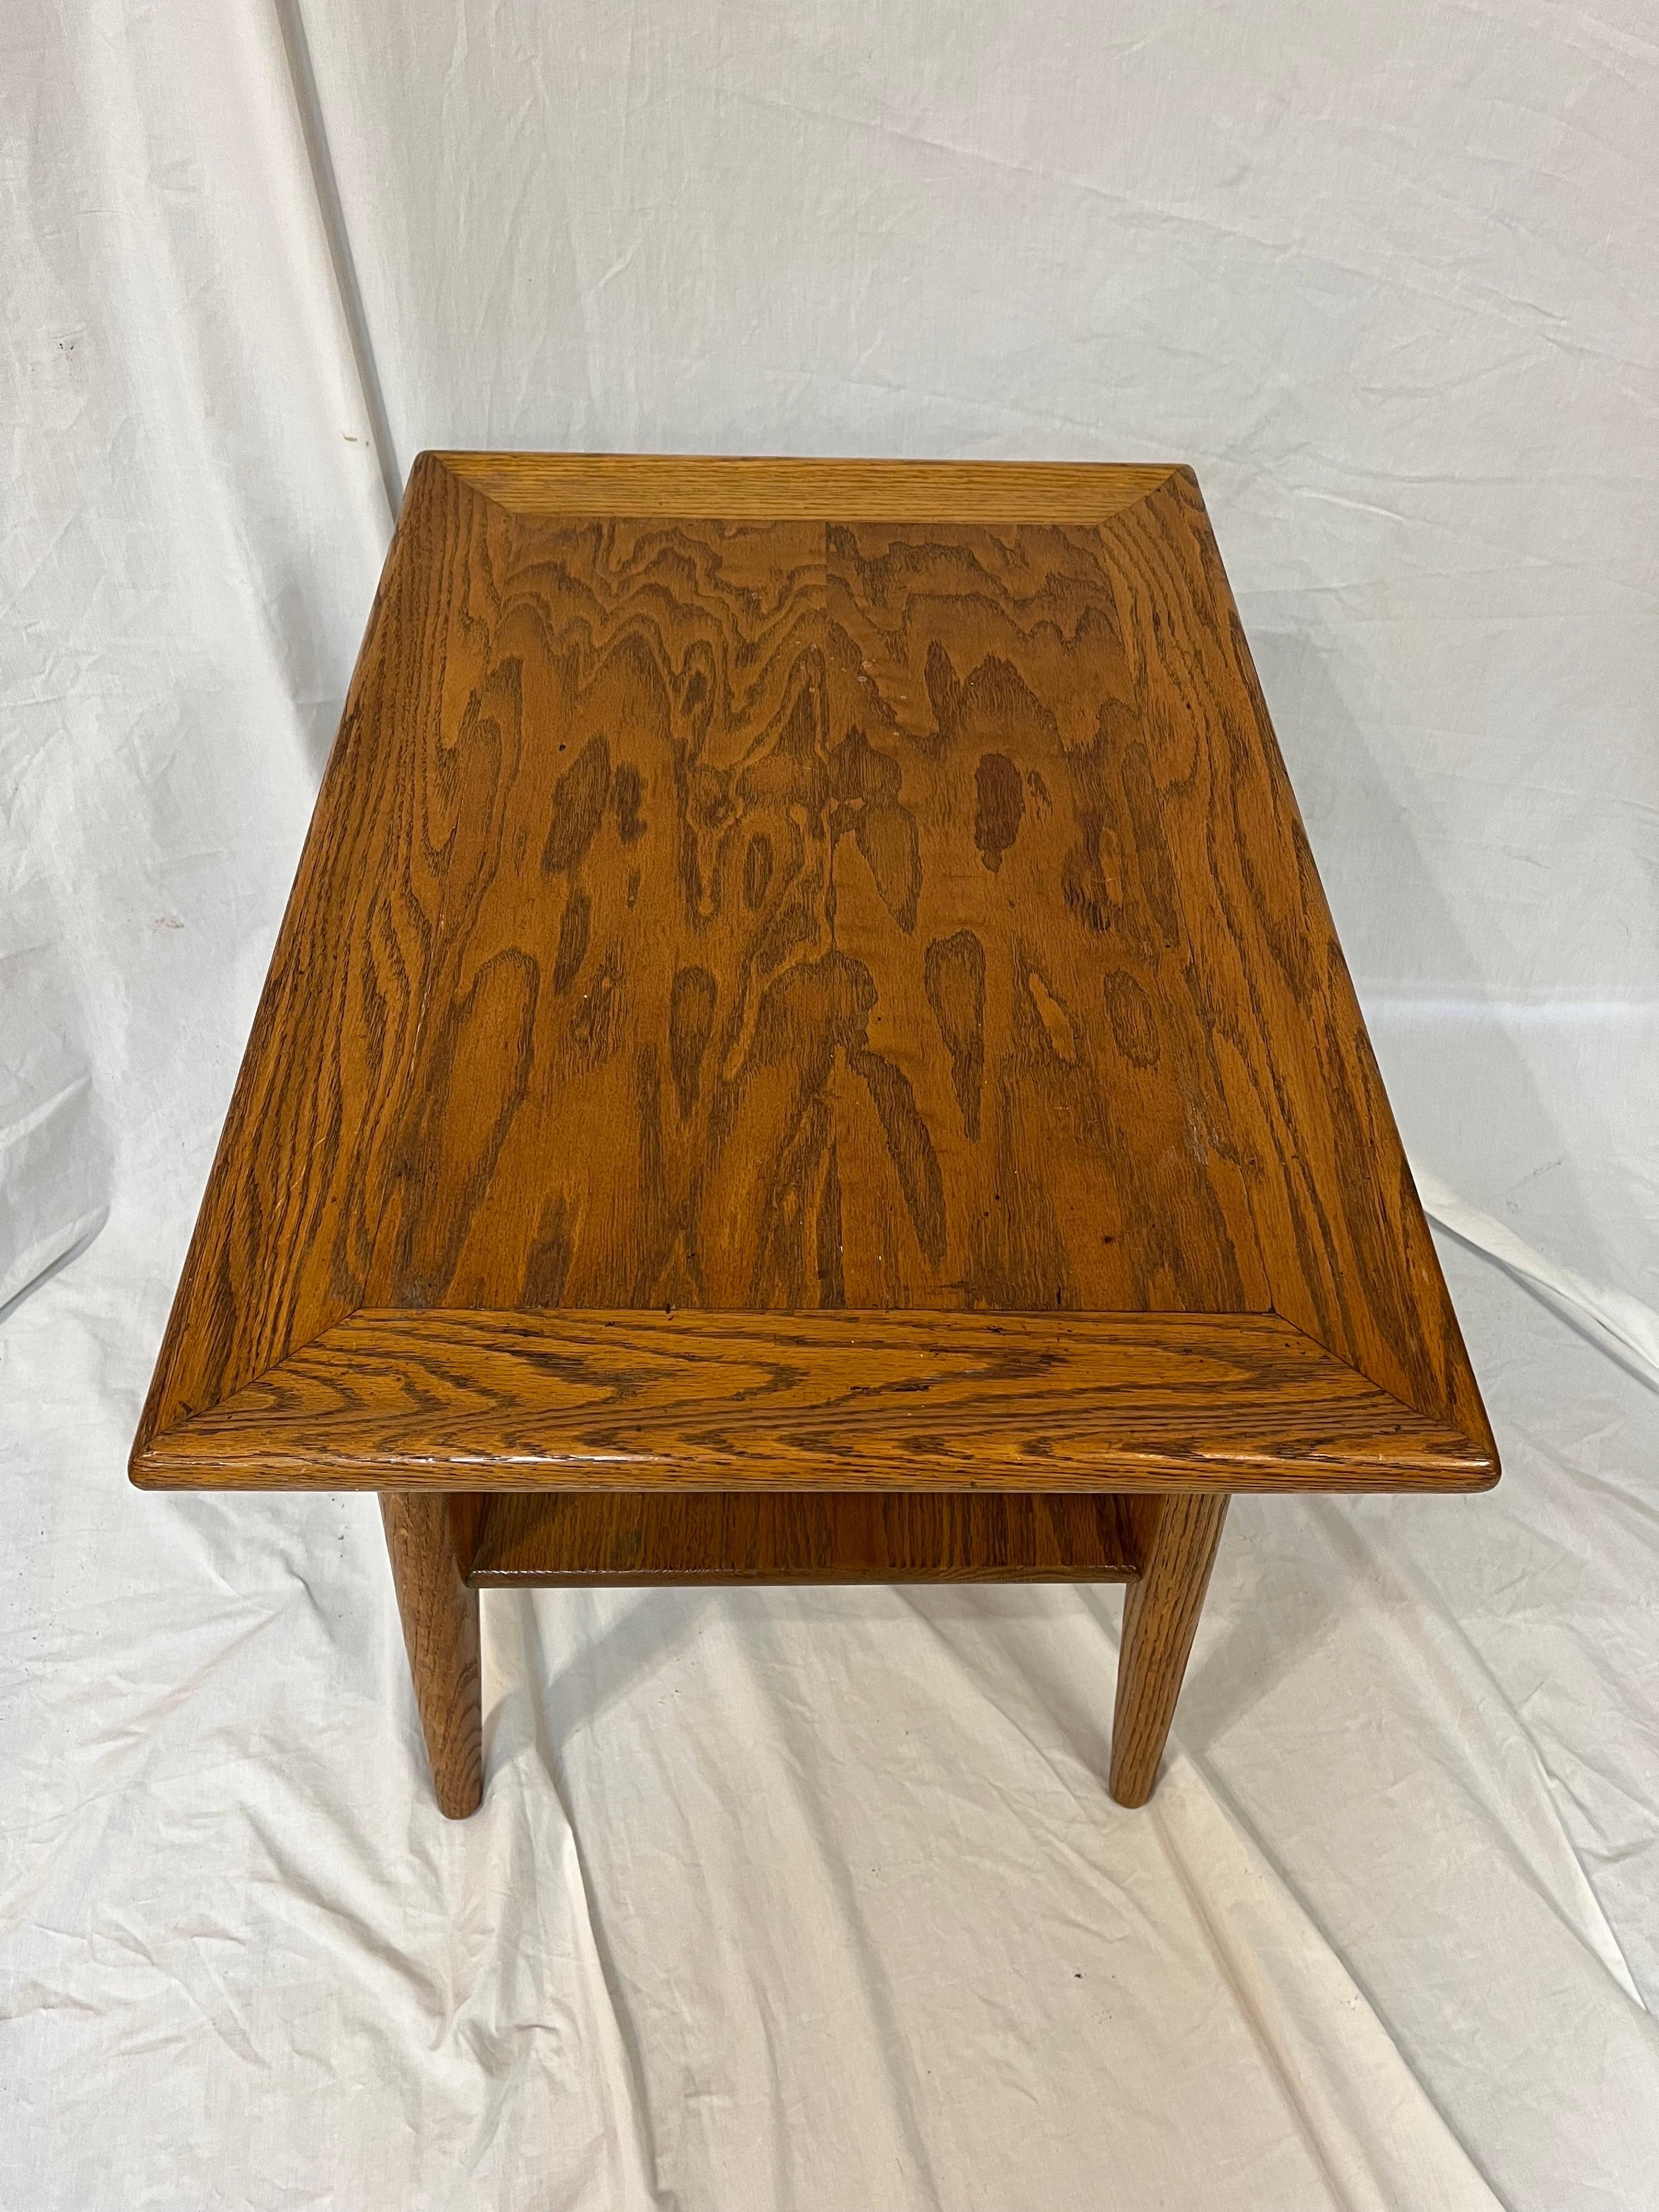 Jack Van Der Molen Mid Century Modern American Design Oak Wood Side or End Table For Sale 1